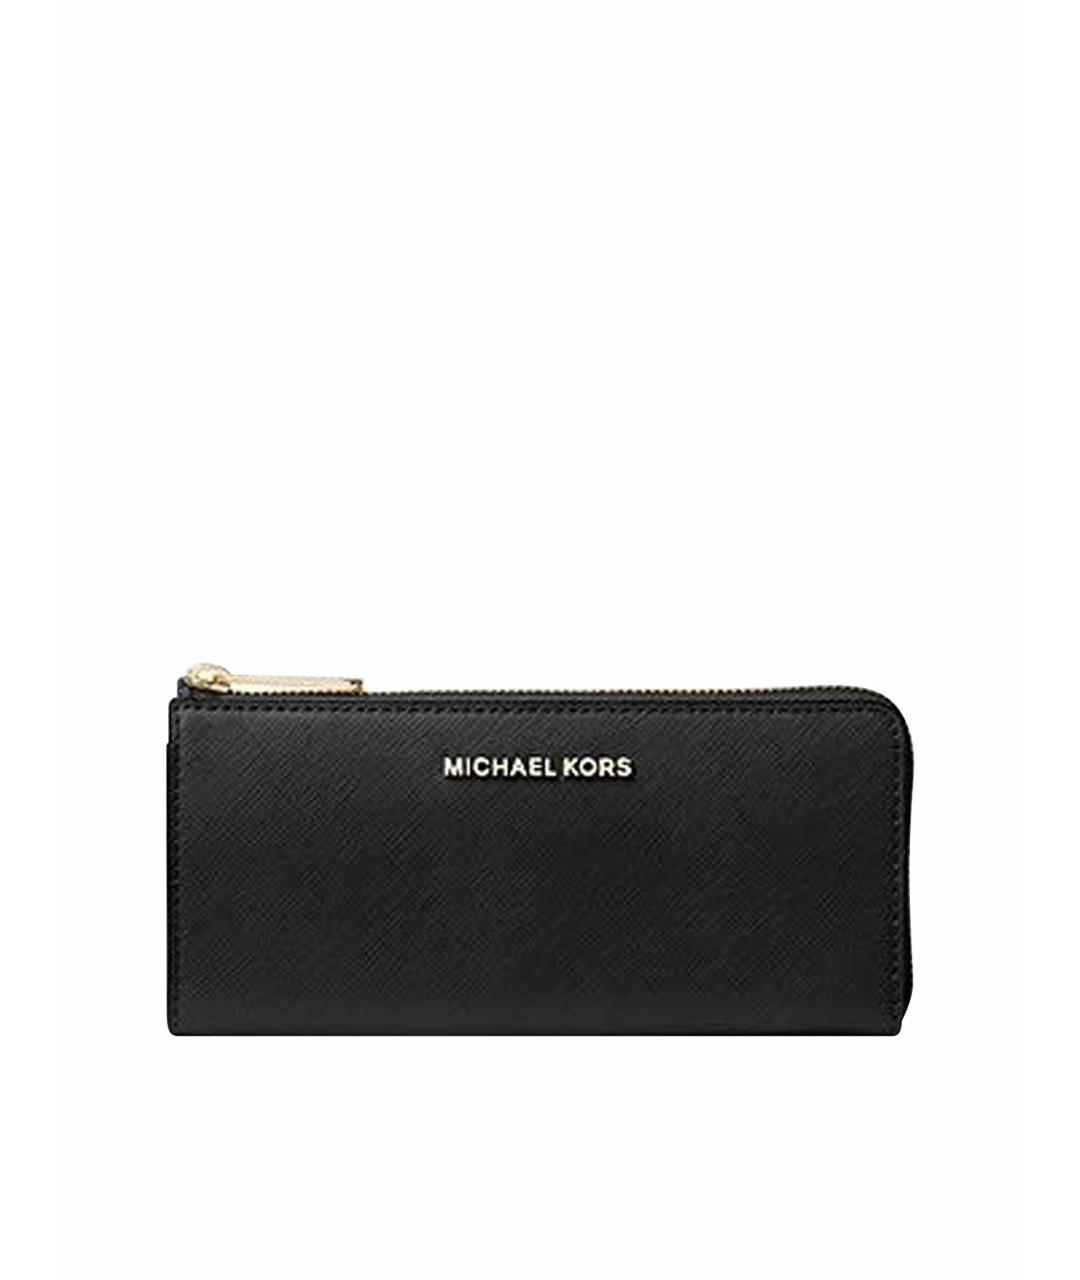 MICHAEL KORS Черный кожаный кошелек, фото 1